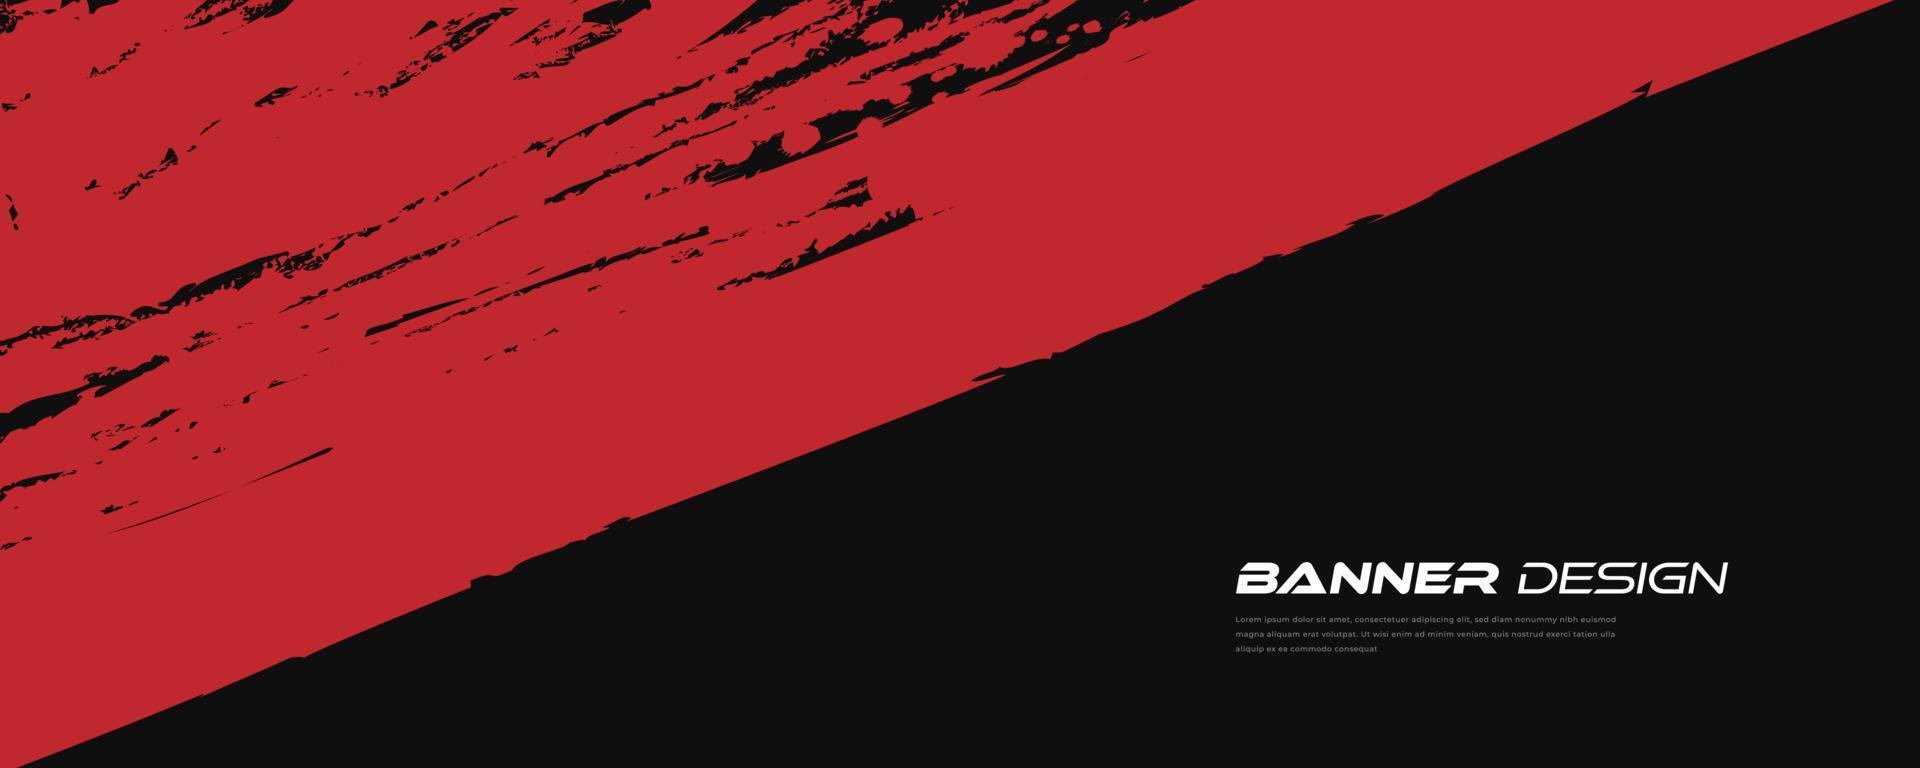 fondo abstracto grunge negro y rojo. ilustración de trazo de pincel para banner. elementos de rayado y textura para el diseño vector